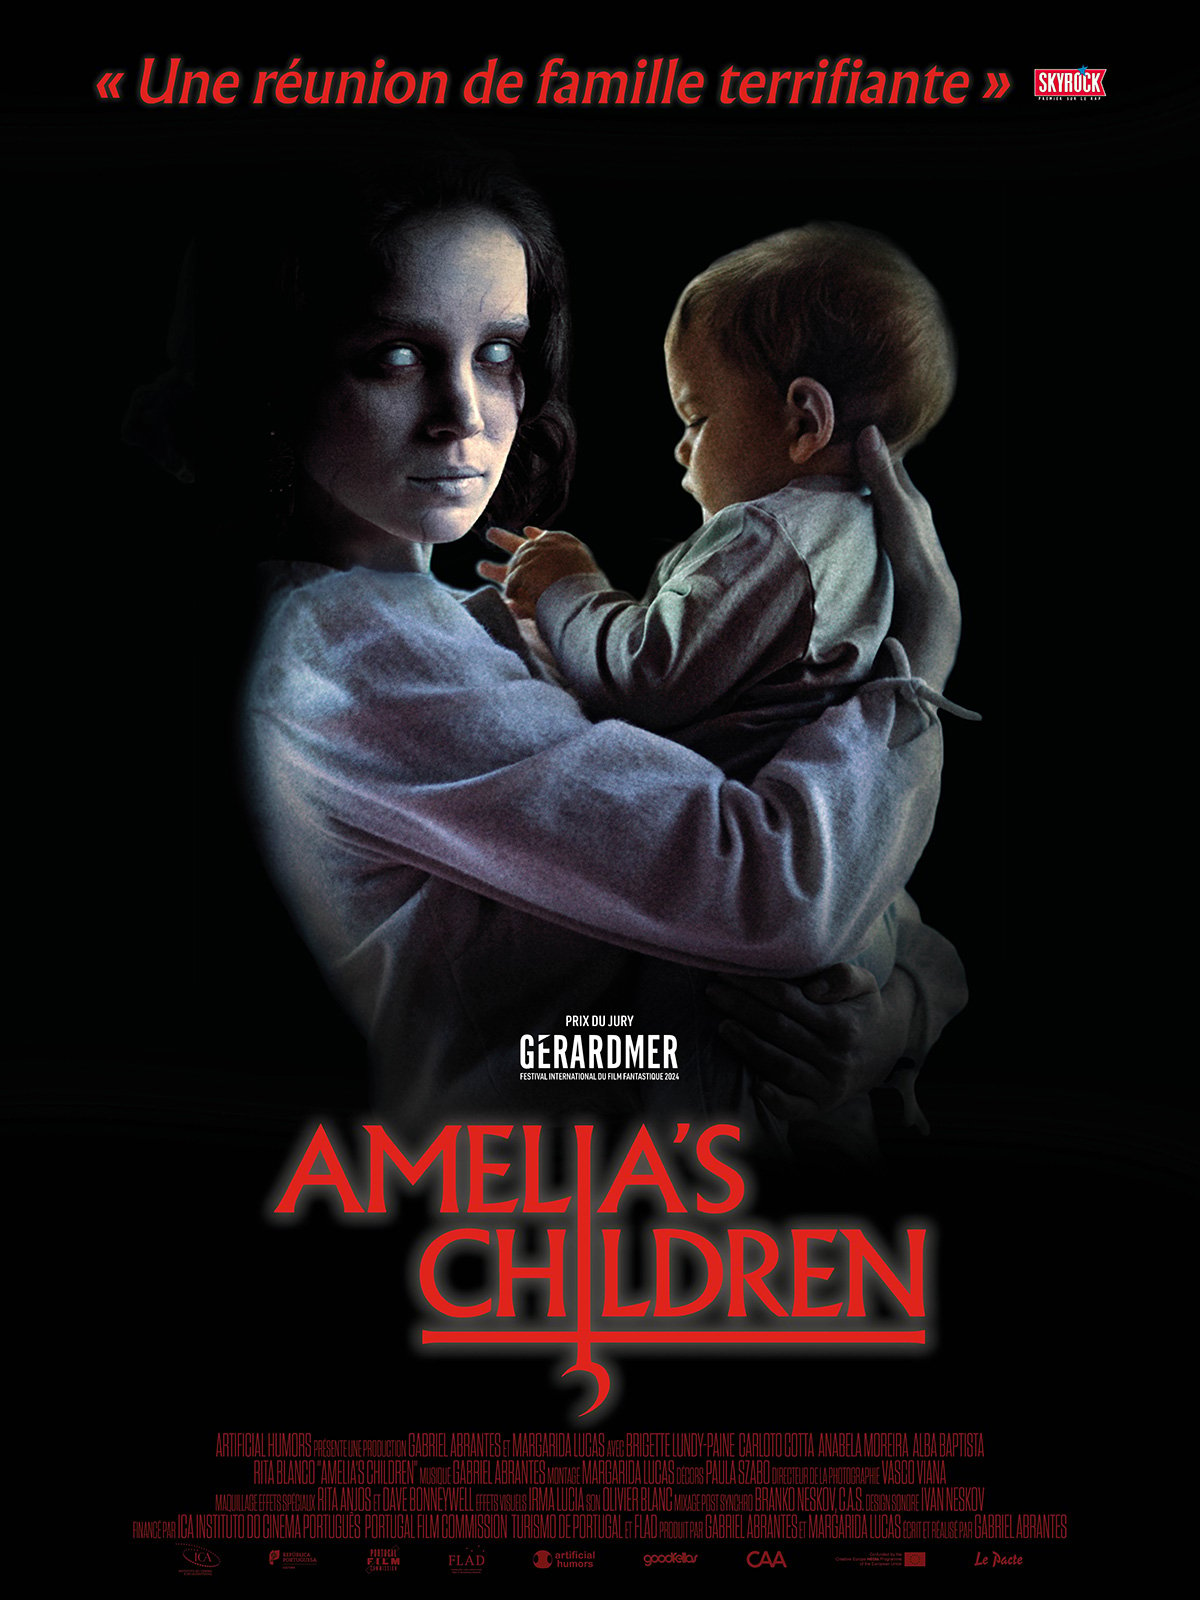 AMELIA'S CHILDREN